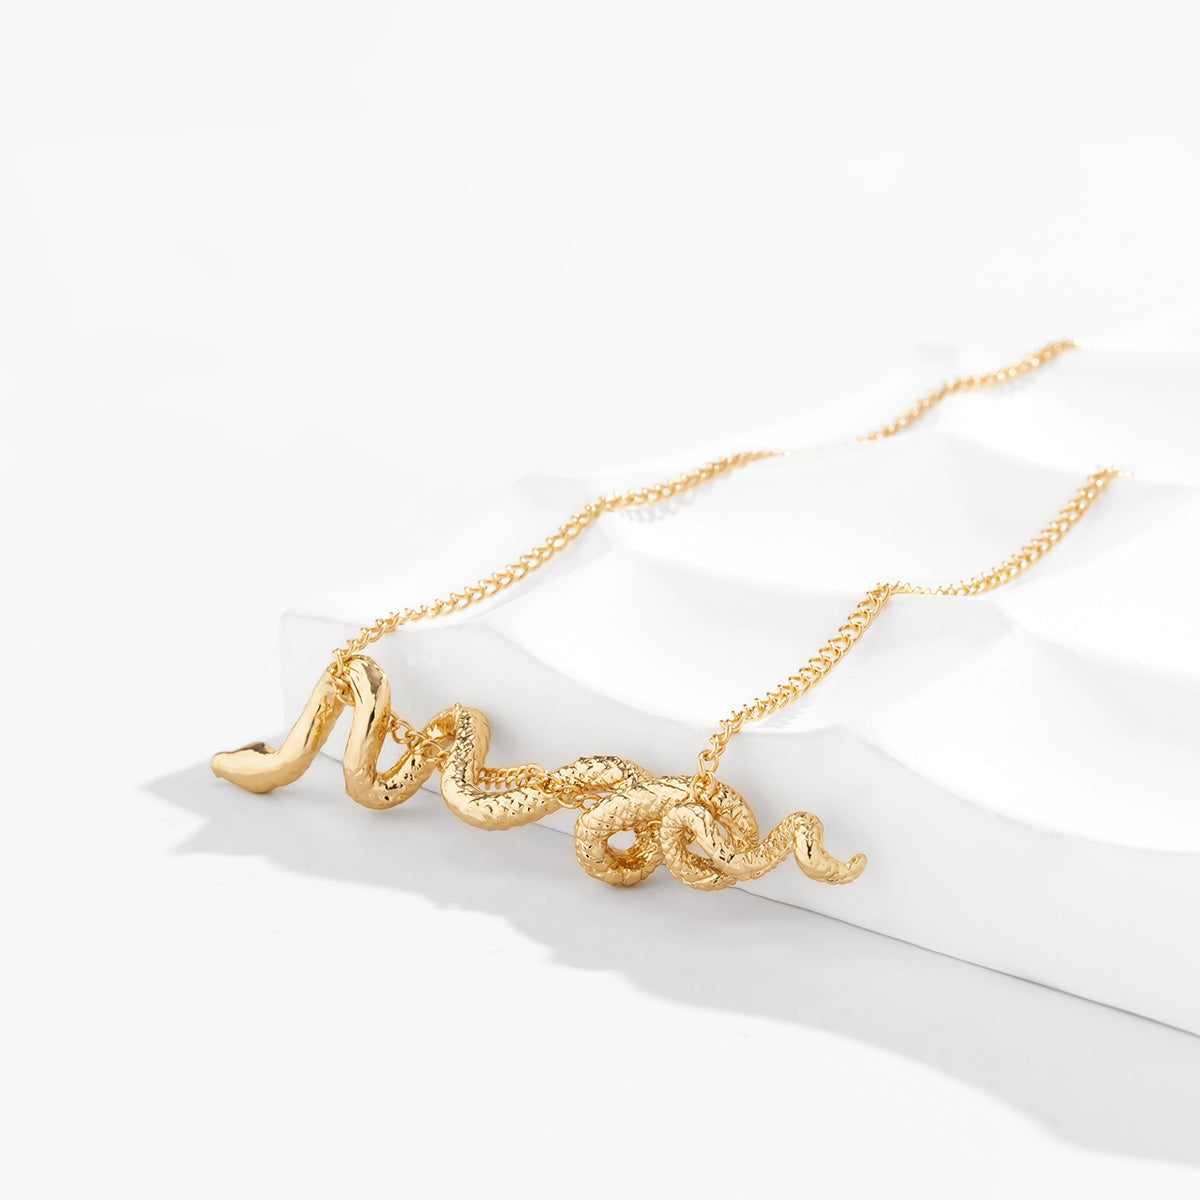 Snake Pendant Necklace for Women Gift